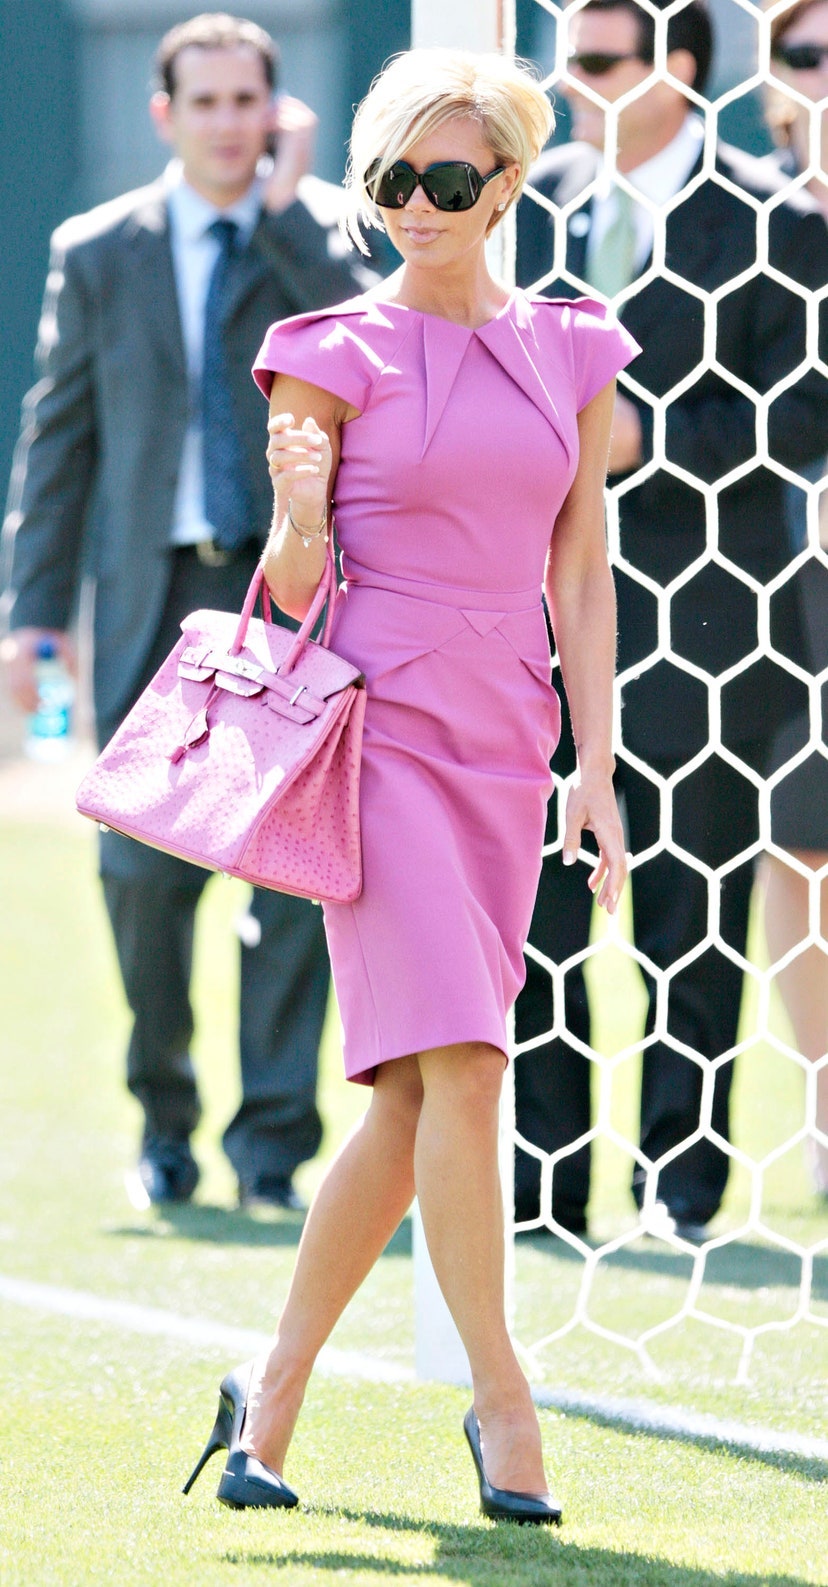 Виктория прогуливается по футбольному полю на шпильках и во всем розовом . Холст масло 2007